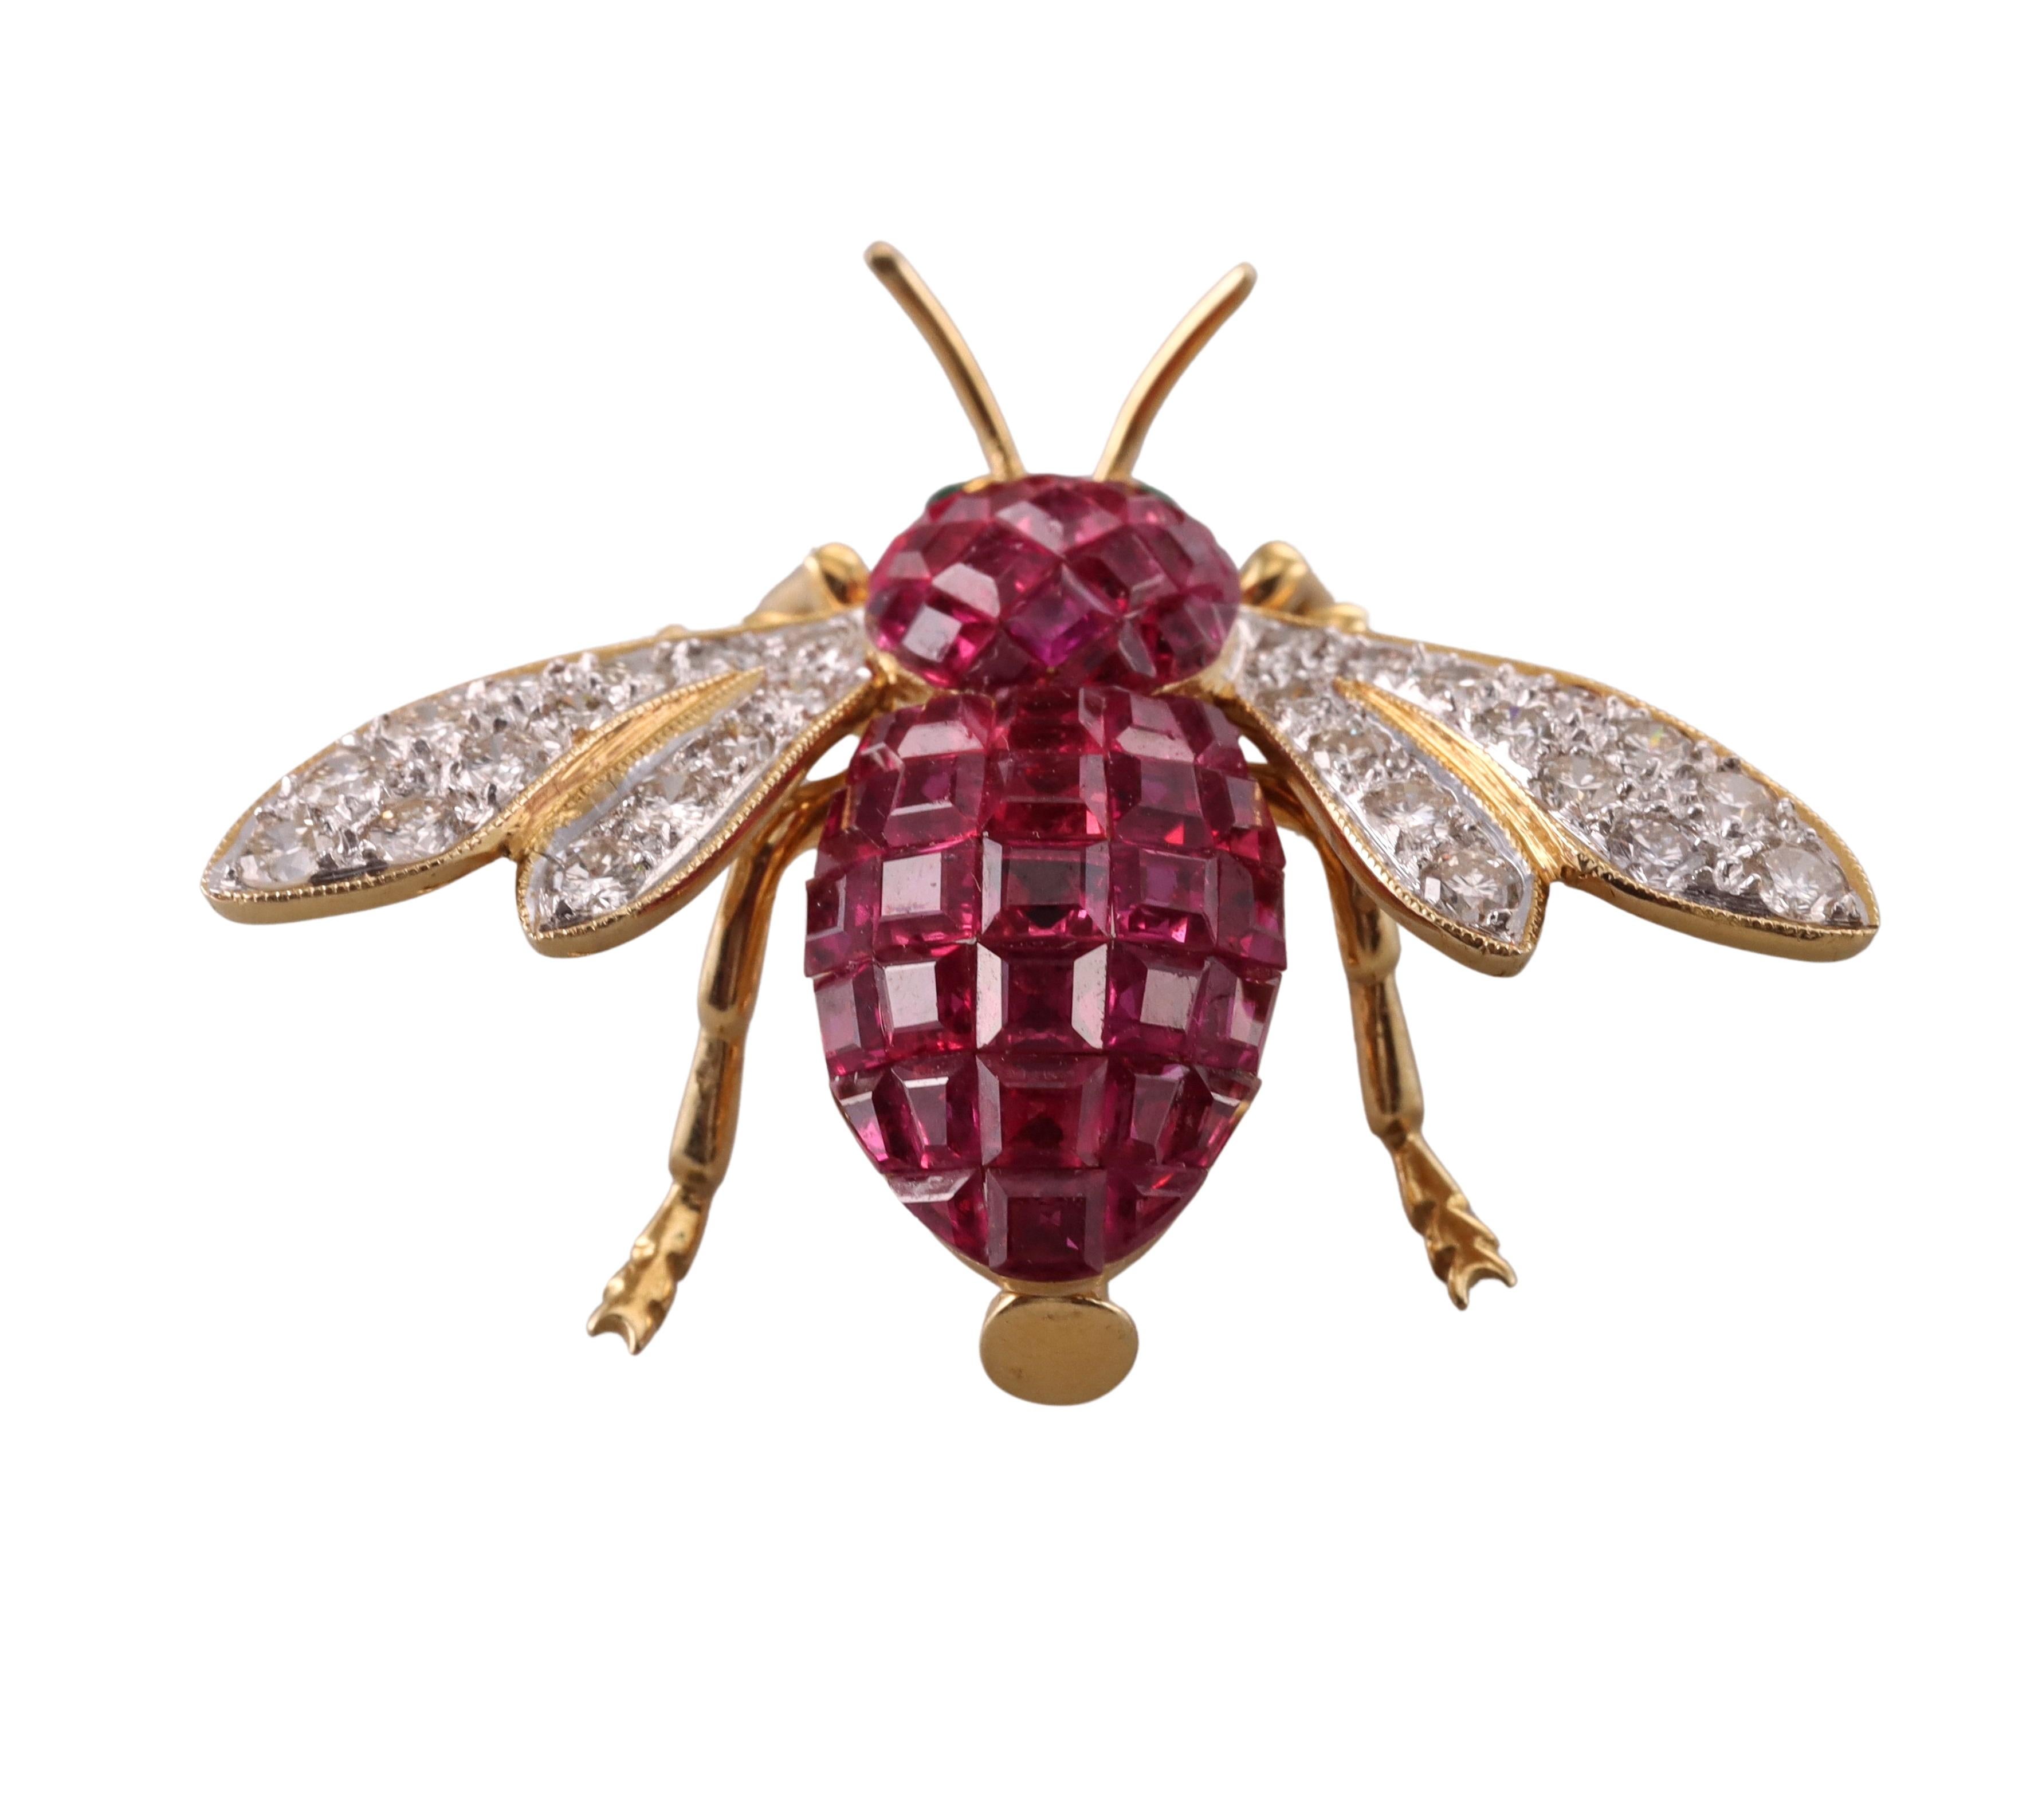 Adorable broche abeille en or jaune 18 carats, par le designer italien Sabbadini. Elle est ornée de rubis en serti invisible et d'environ 0,80ctw de diamants G/VS, avec des yeux en émeraude. La broche mesure 1 1/8